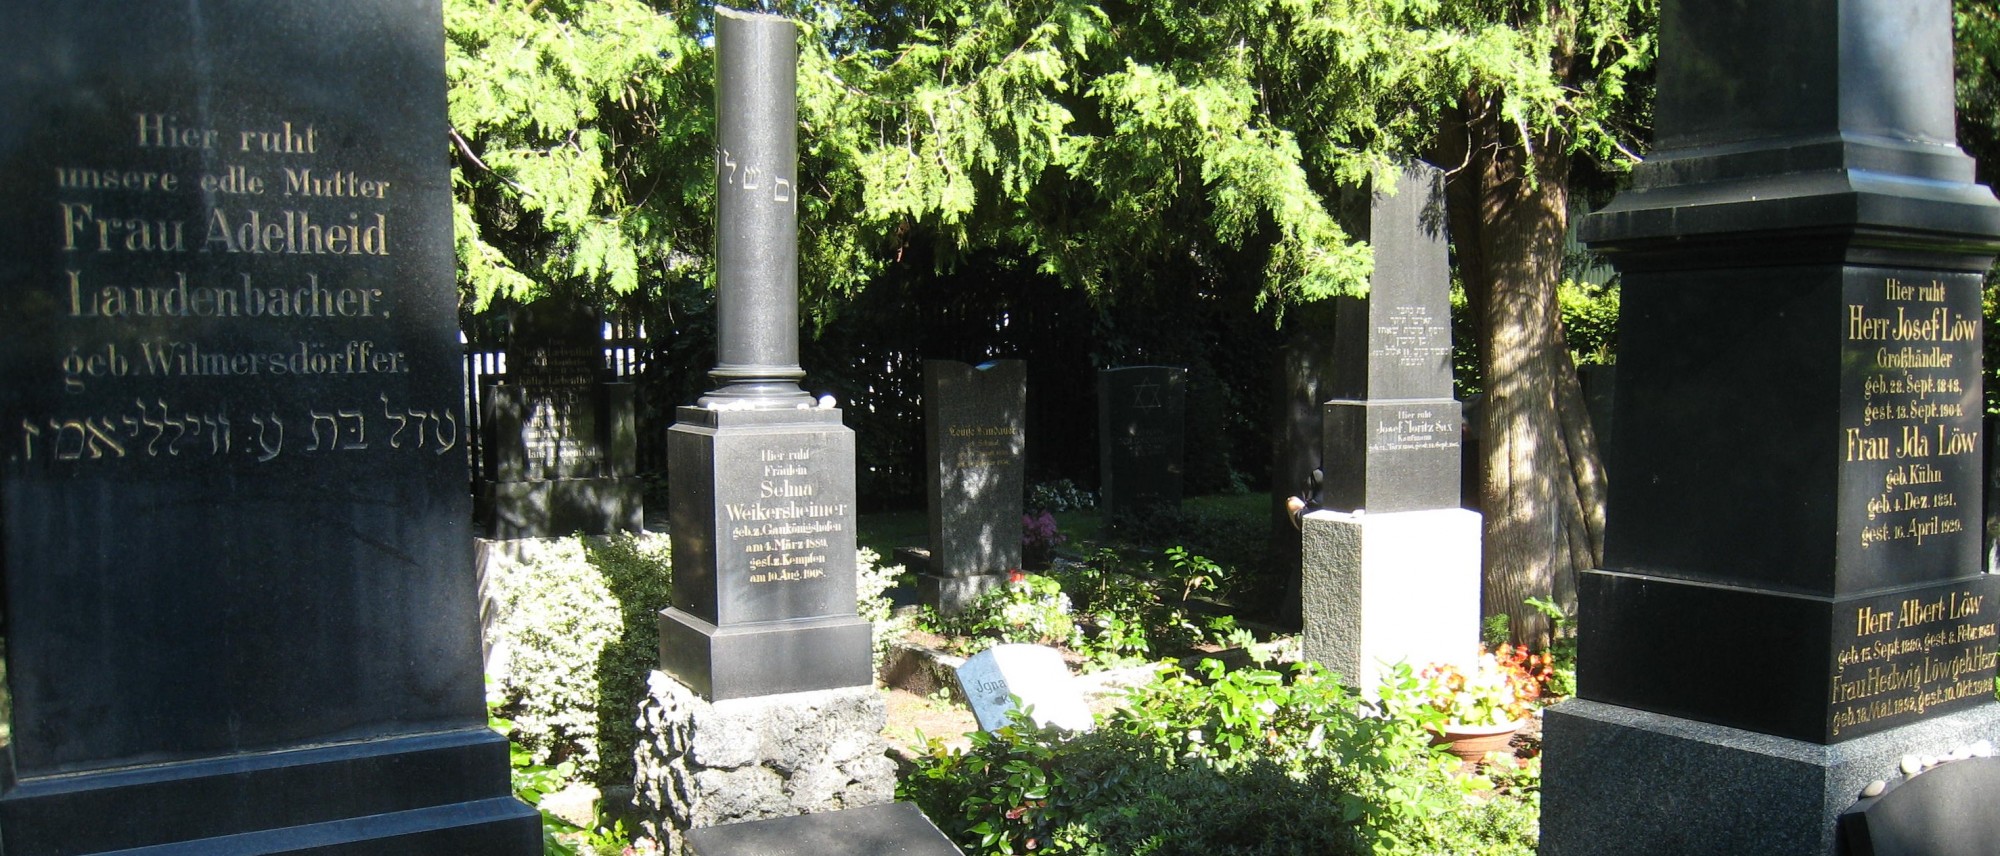 Grabsteine mit hebräischen und deutschen Inschriften auf dem Friedhof in Kempten. Führt zur Unterseite &quot;Kempten&quot;.